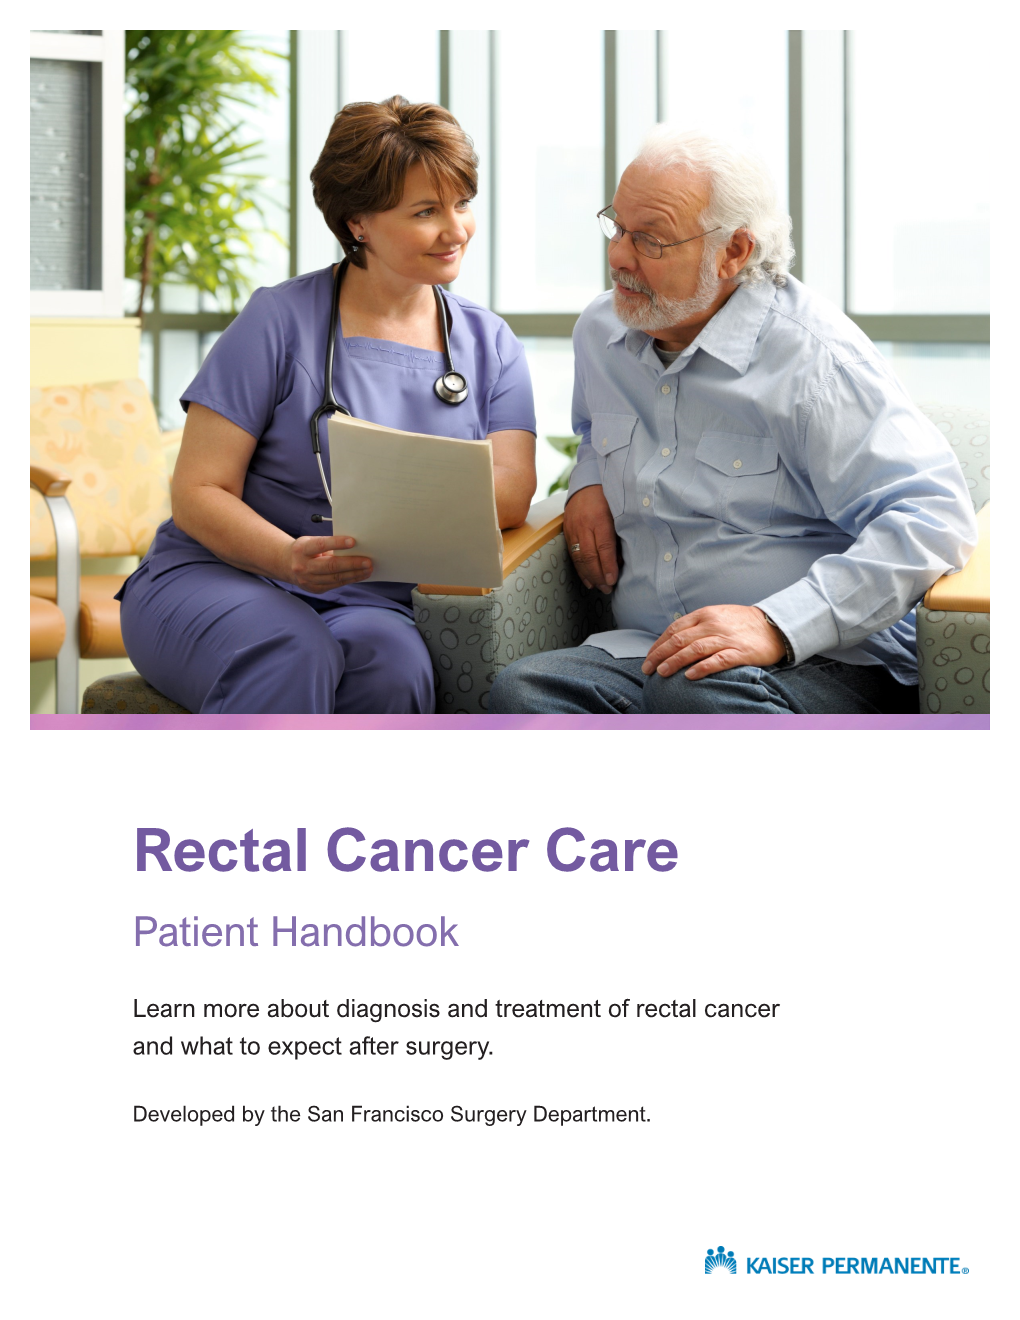 Rectal Cancer Booklet